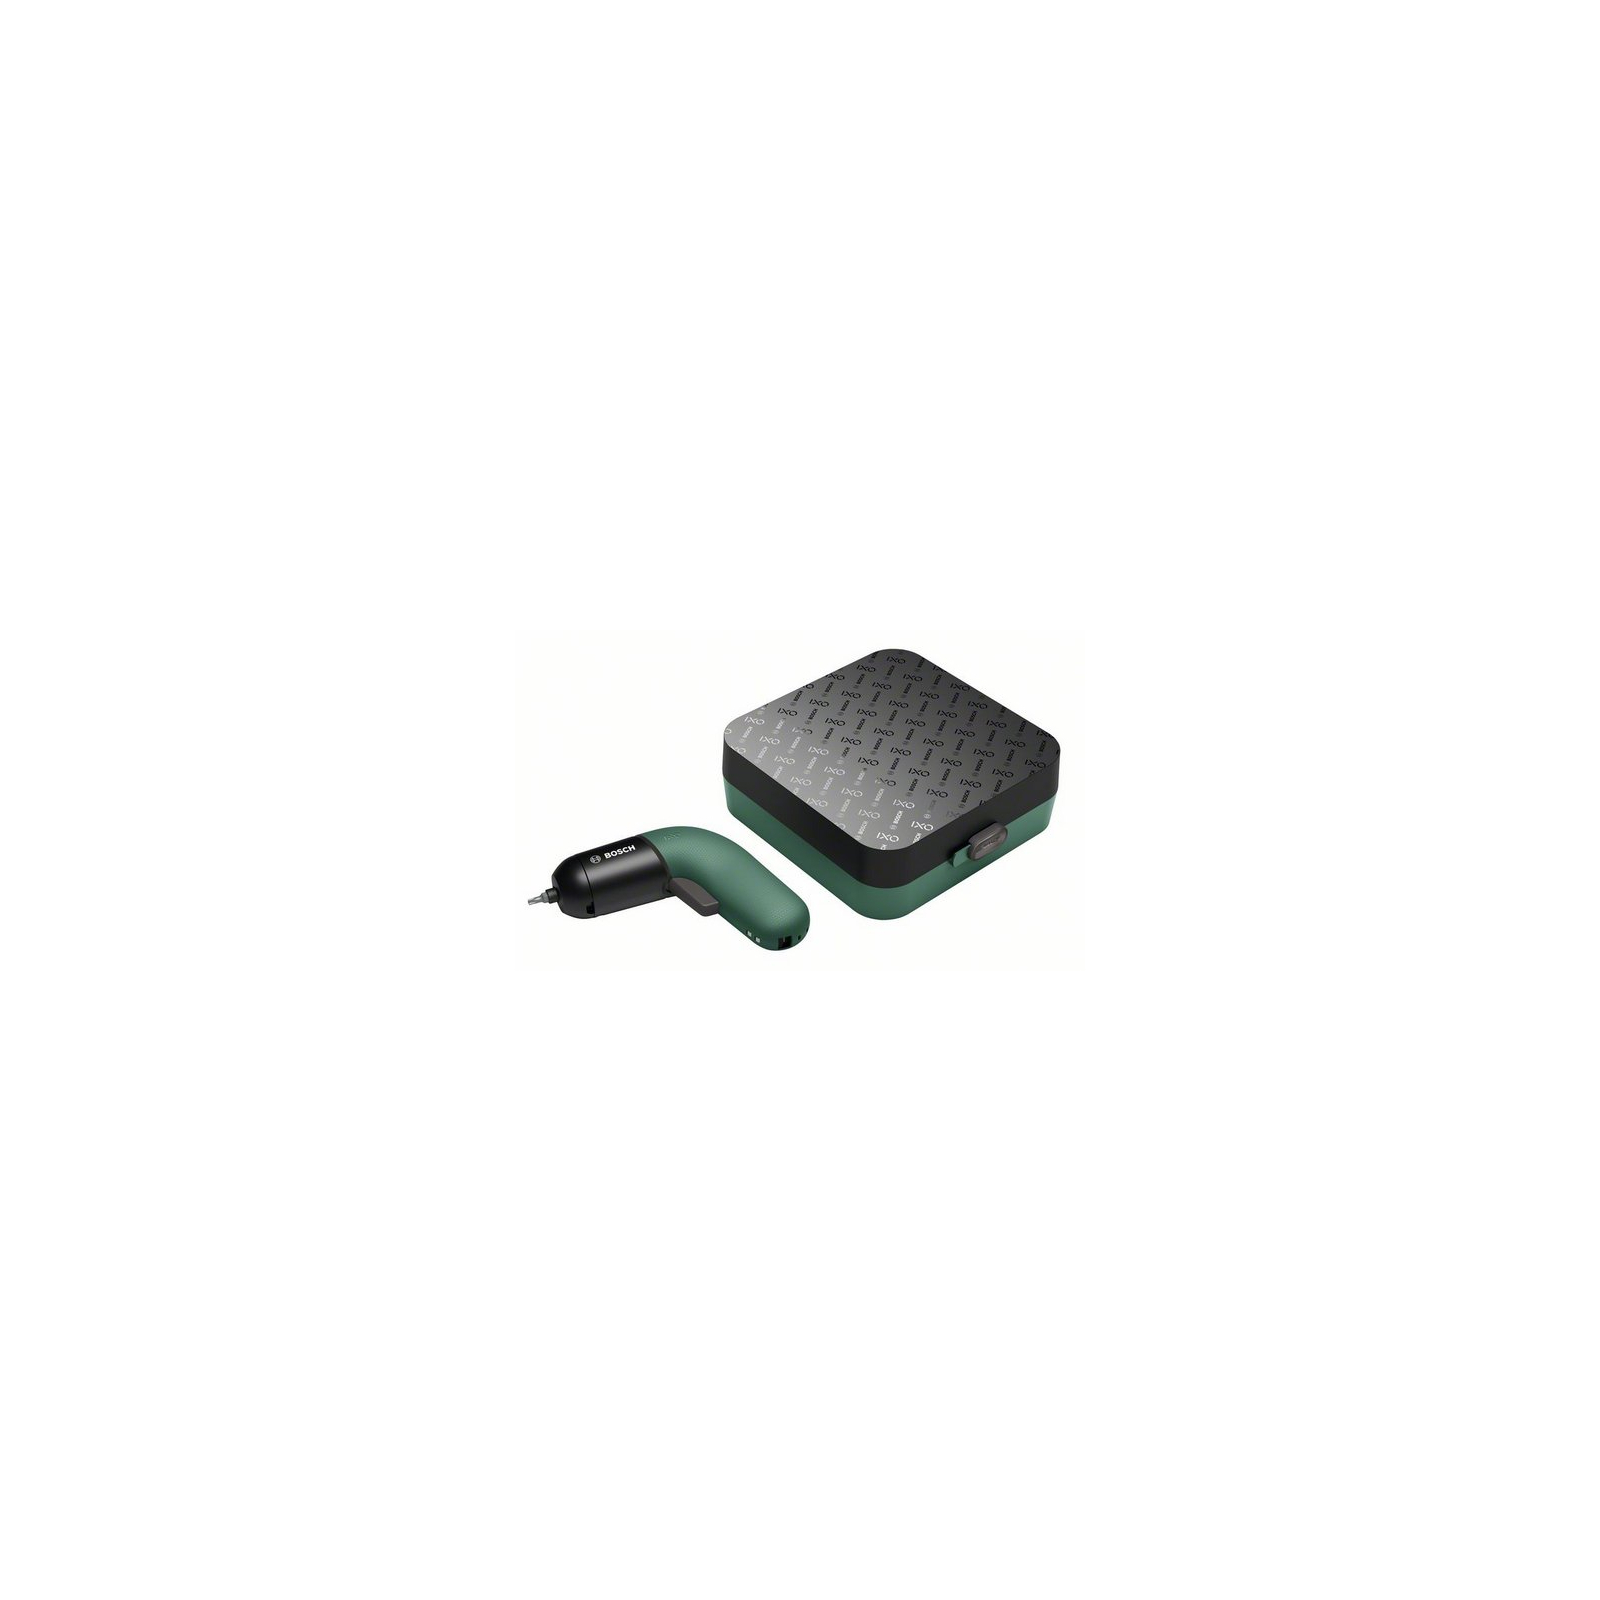 Отвертка аккумуляторная Bosch IXO VI, LED, аккумуляторный, 10бит, кейс (0.603.9C7.020) изображение 2